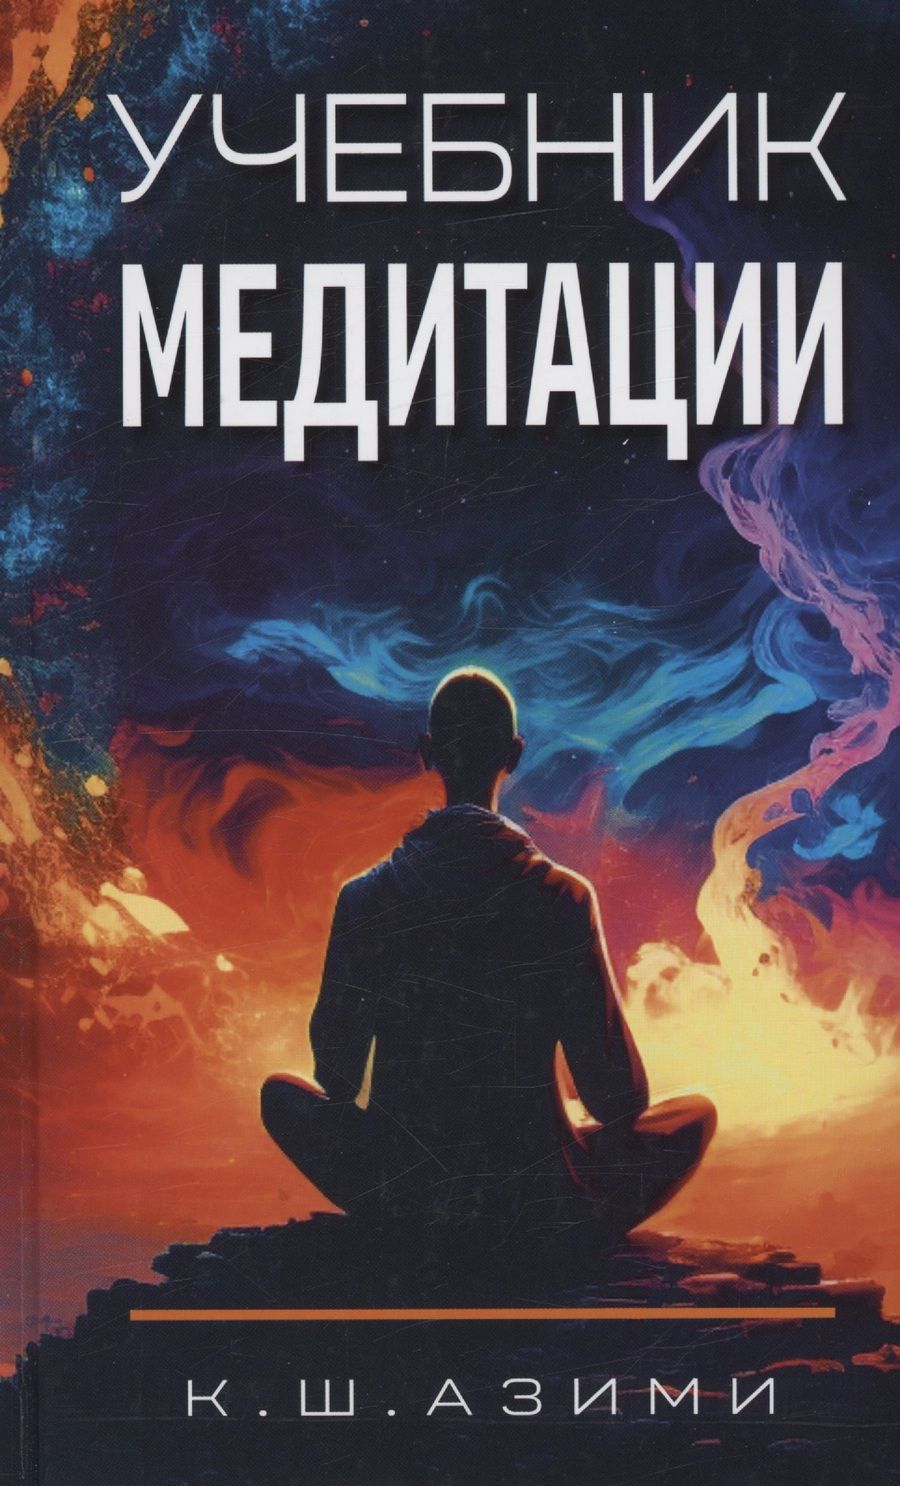 Обложка книги "Азими: Учебник медитации"